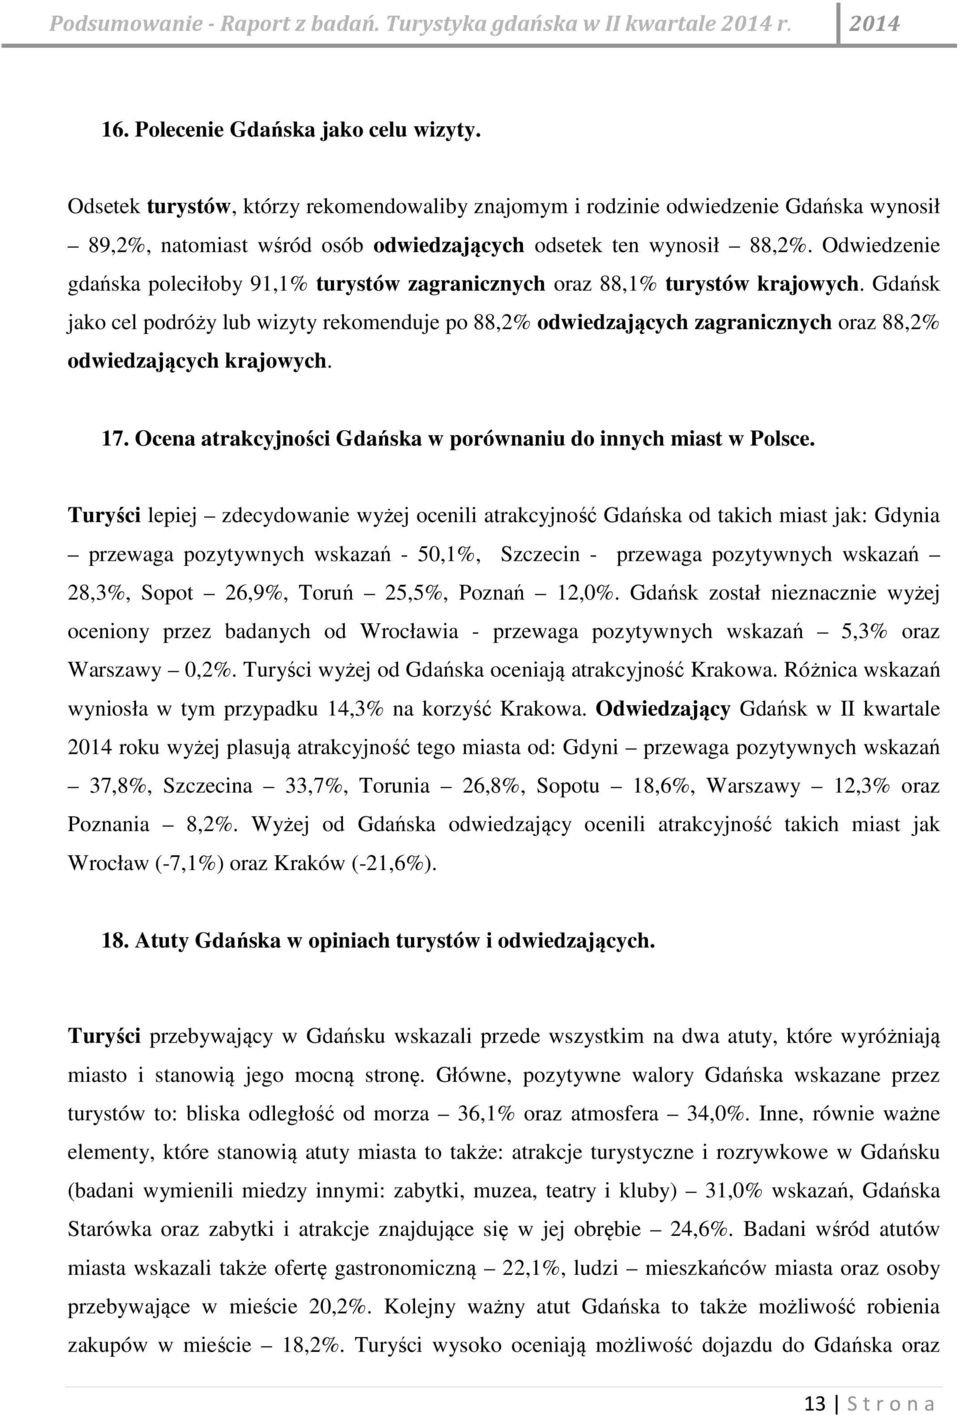 Gdańsk jako cel podróży lub wizyty rekomenduje po 88,2% odwiedzających zagranicznych oraz 88,2% odwiedzających krajowych. 17. Ocena atrakcyjności Gdańska w porównaniu do innych miast w Polsce.